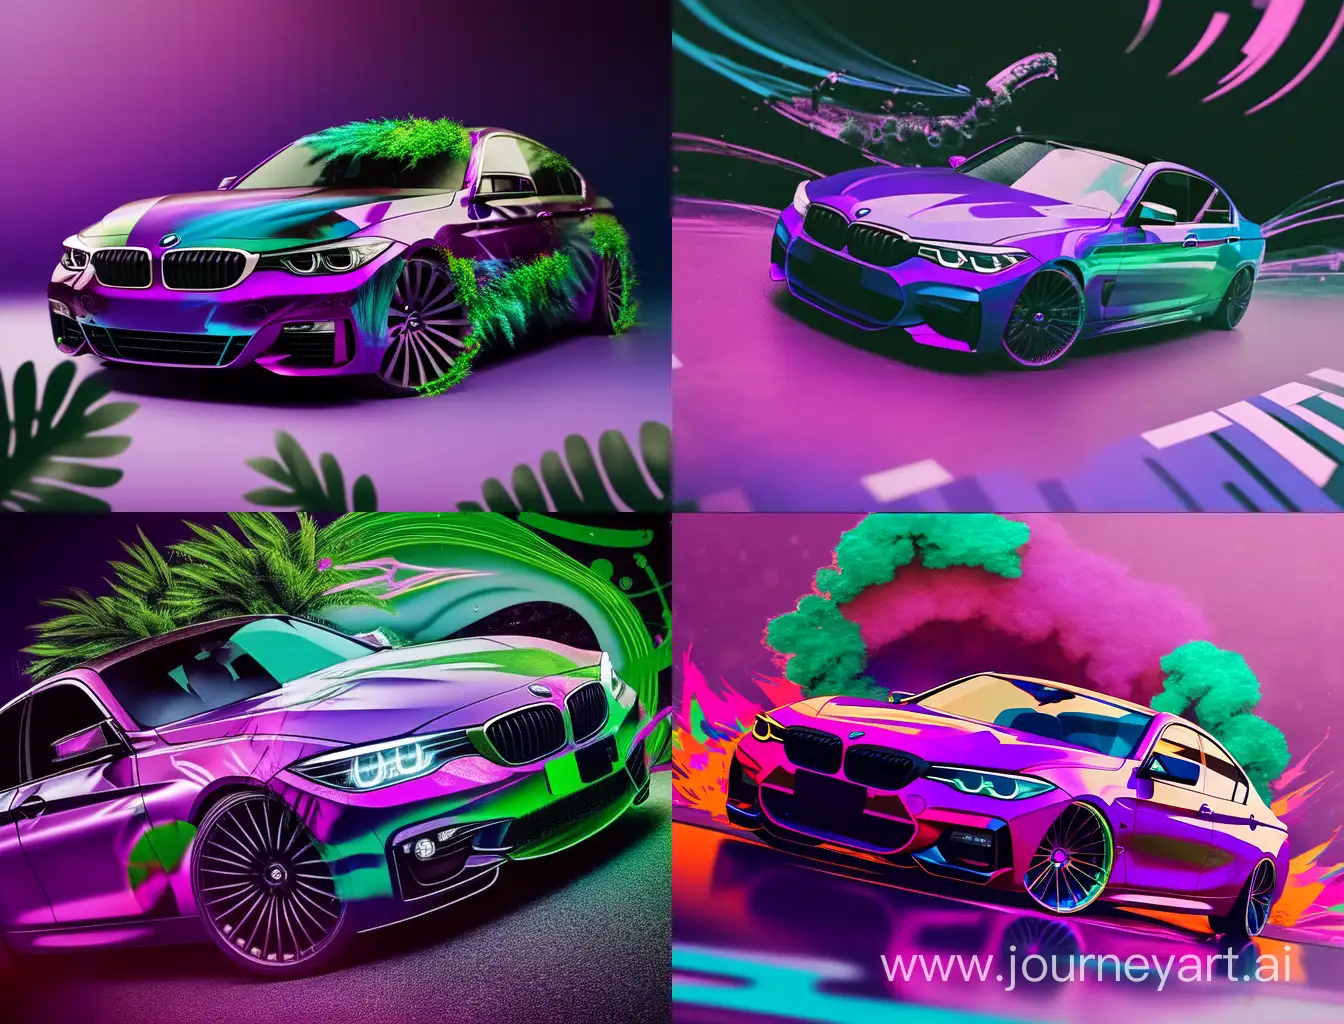 Futuristic-BMW-Car-Redefined-in-Vibrant-Green-Purple-White-and-Fuchsia-Tones